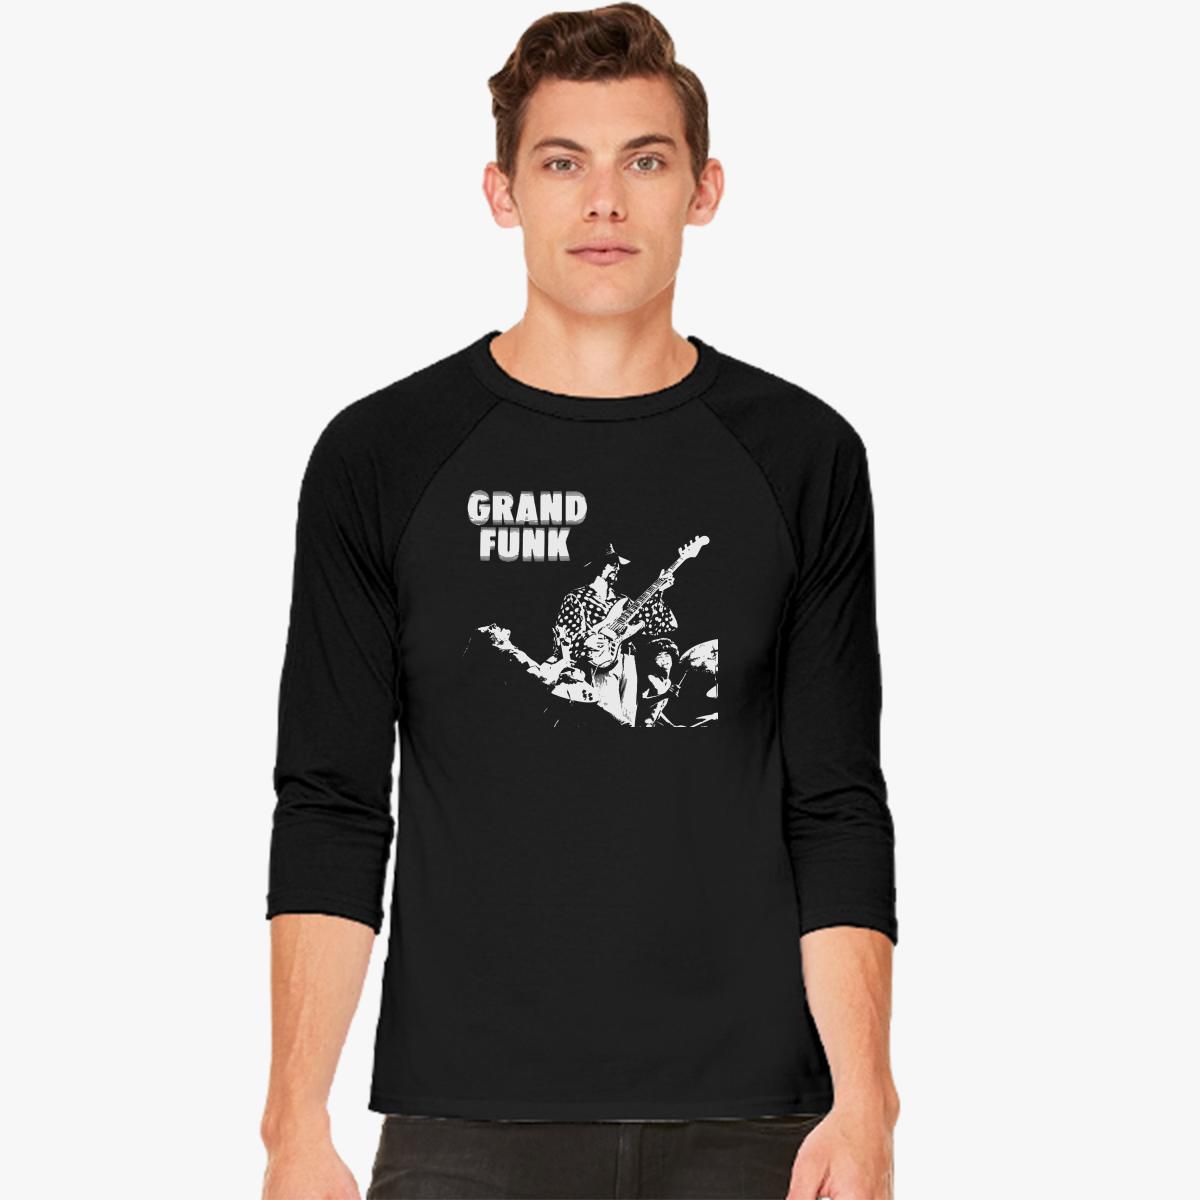 grand funk railroad t shirts